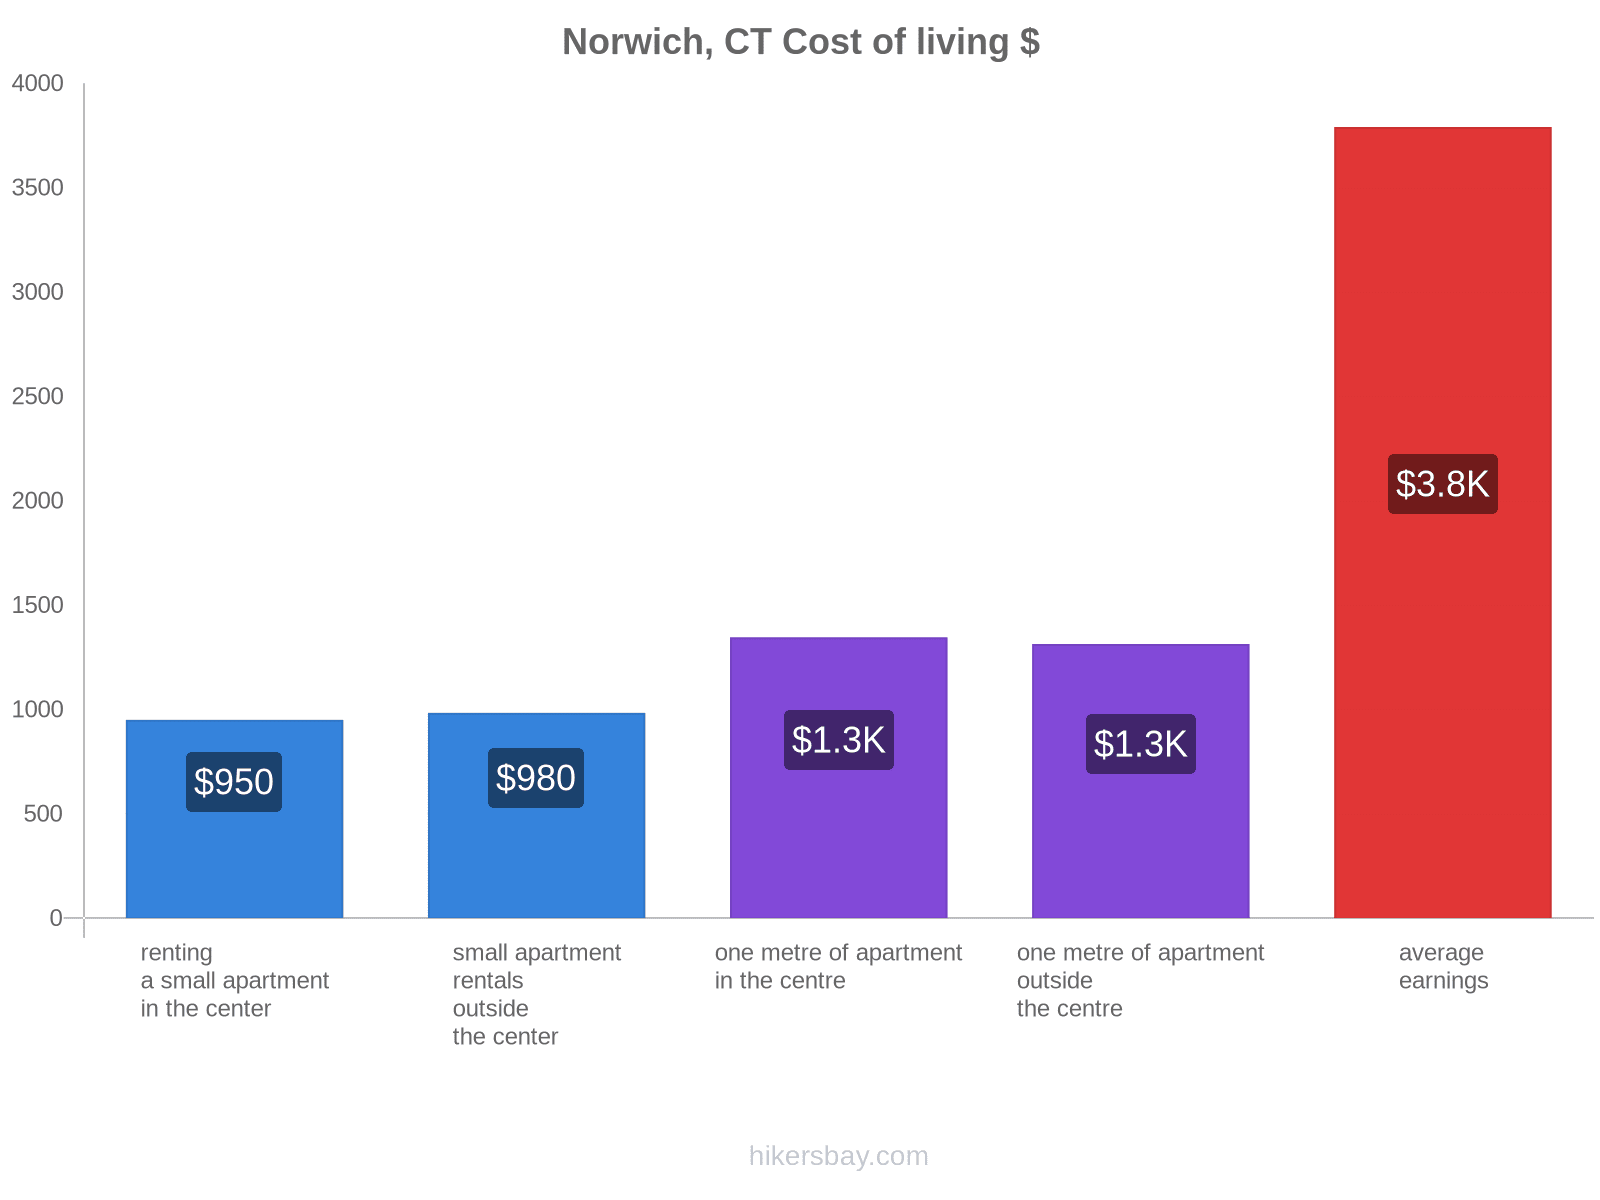 Norwich, CT cost of living hikersbay.com